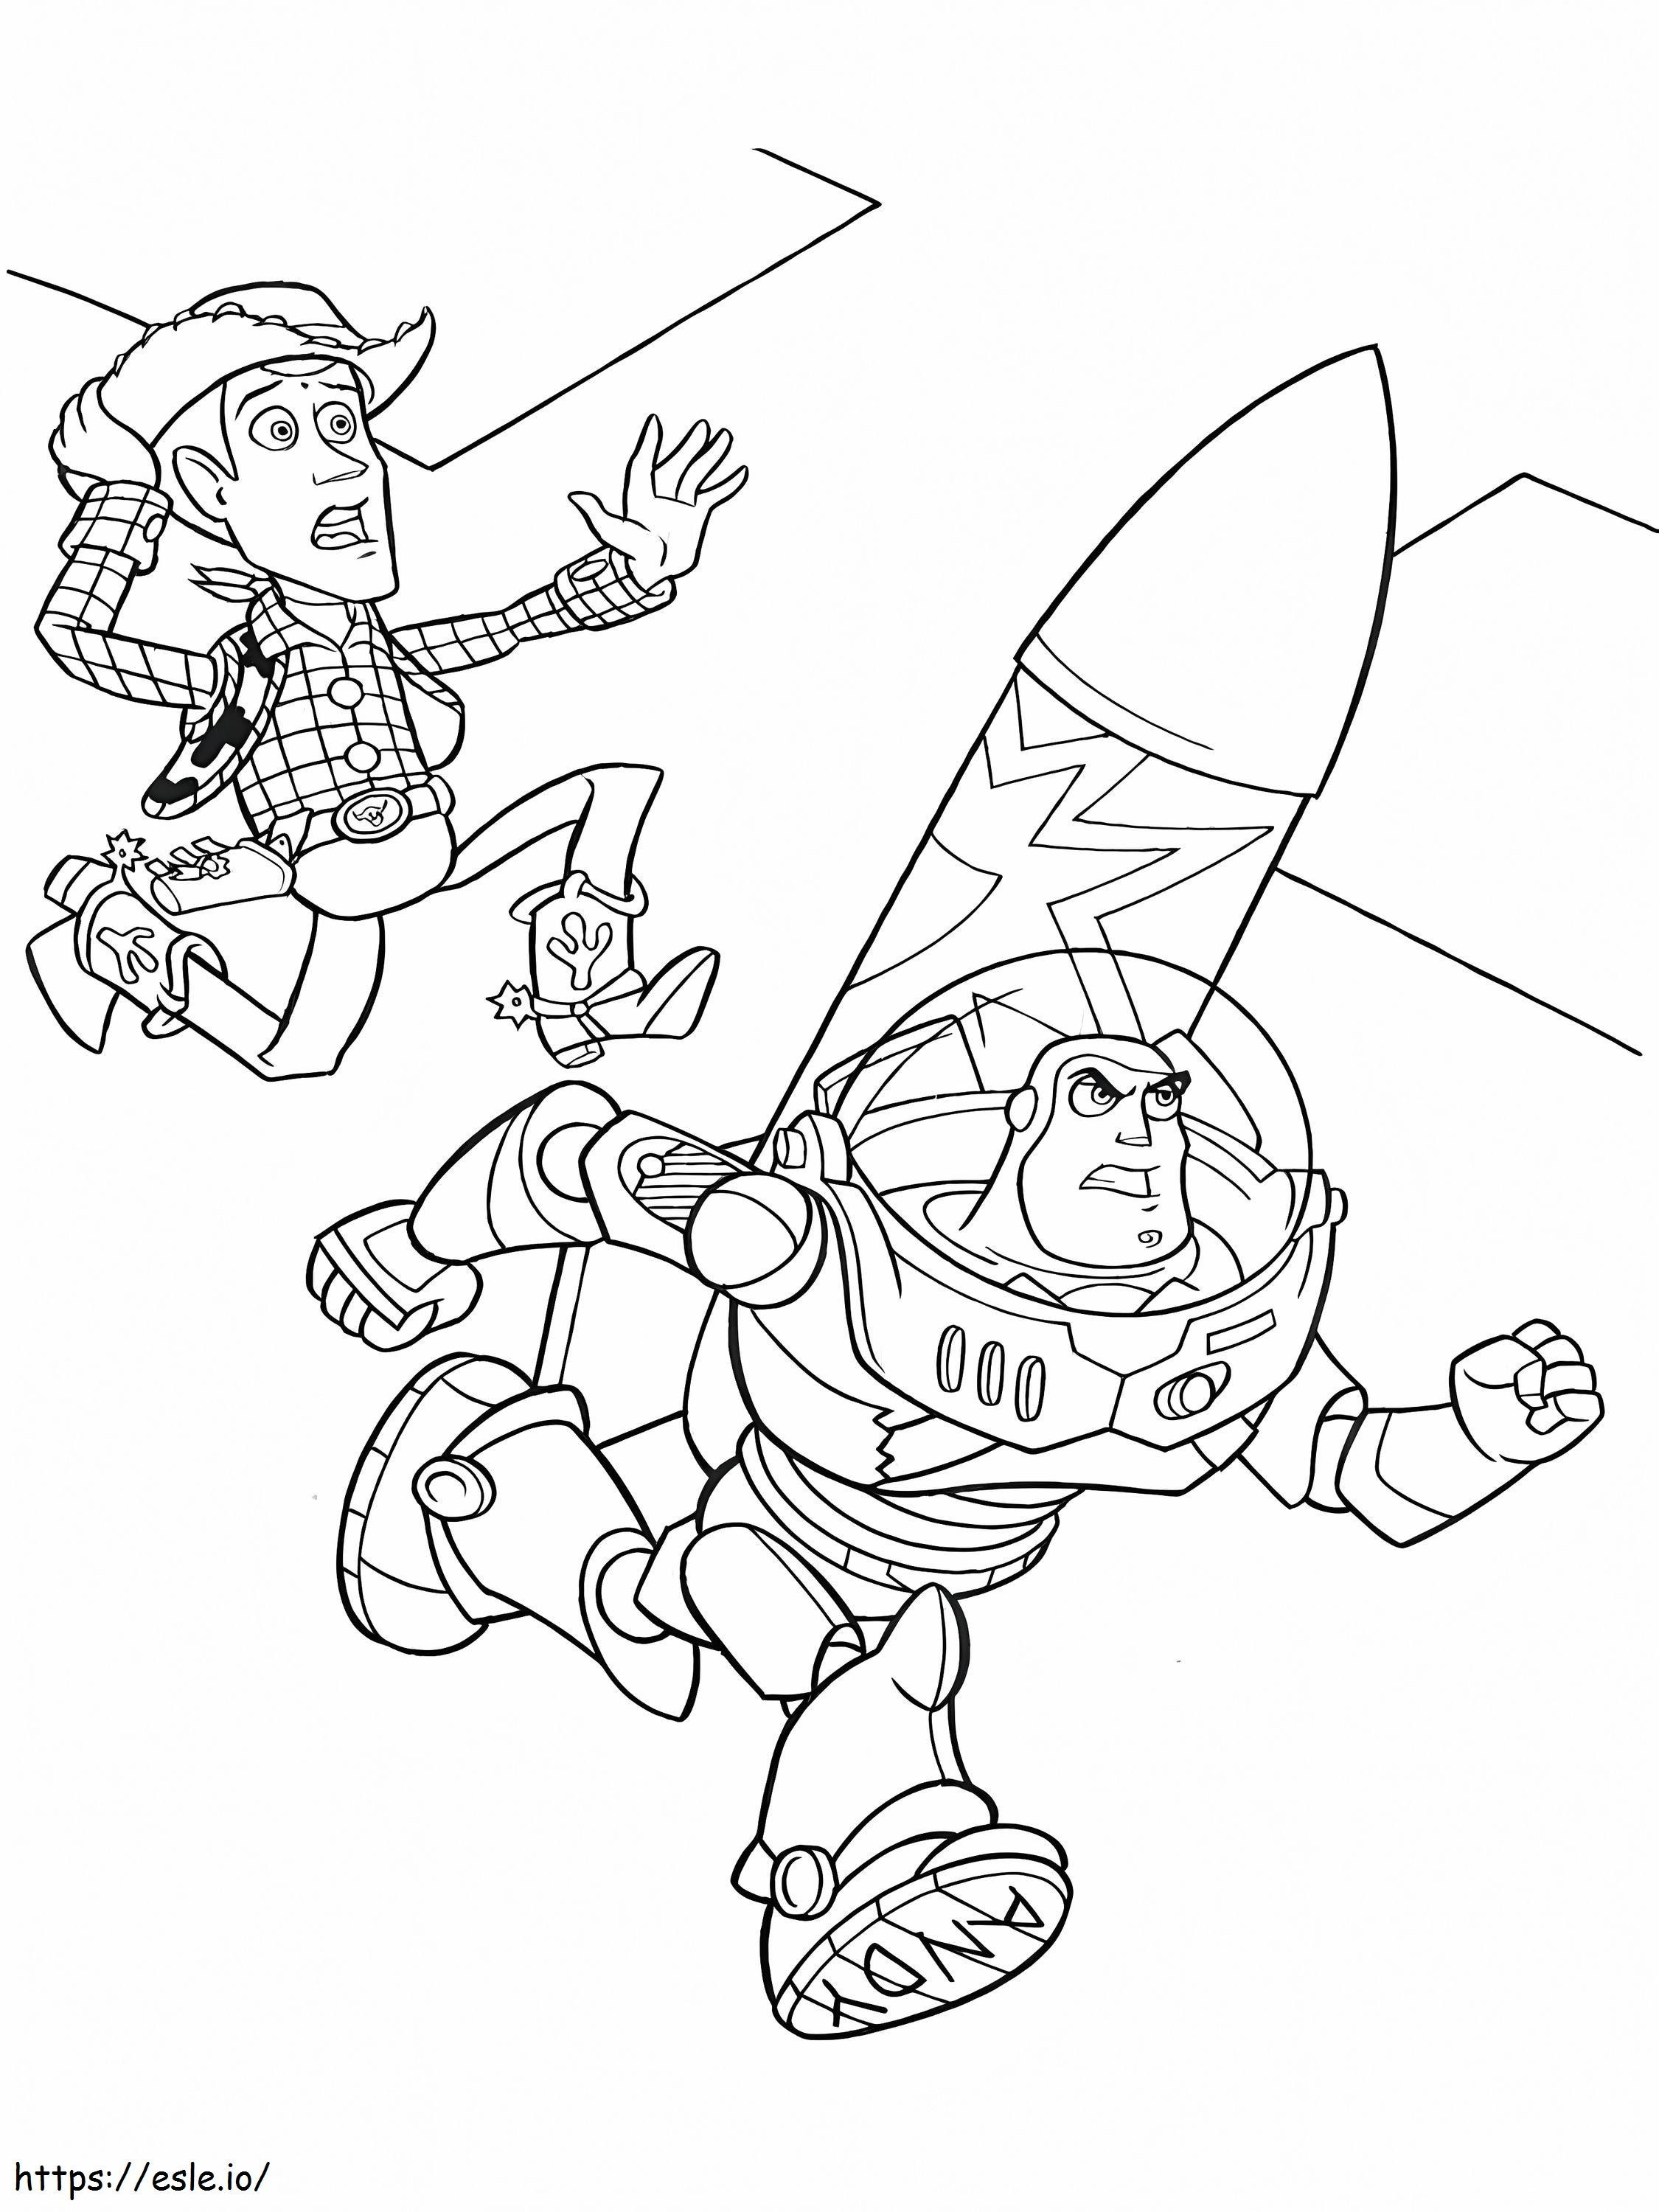 Impresionante Woody y Buzz para colorear